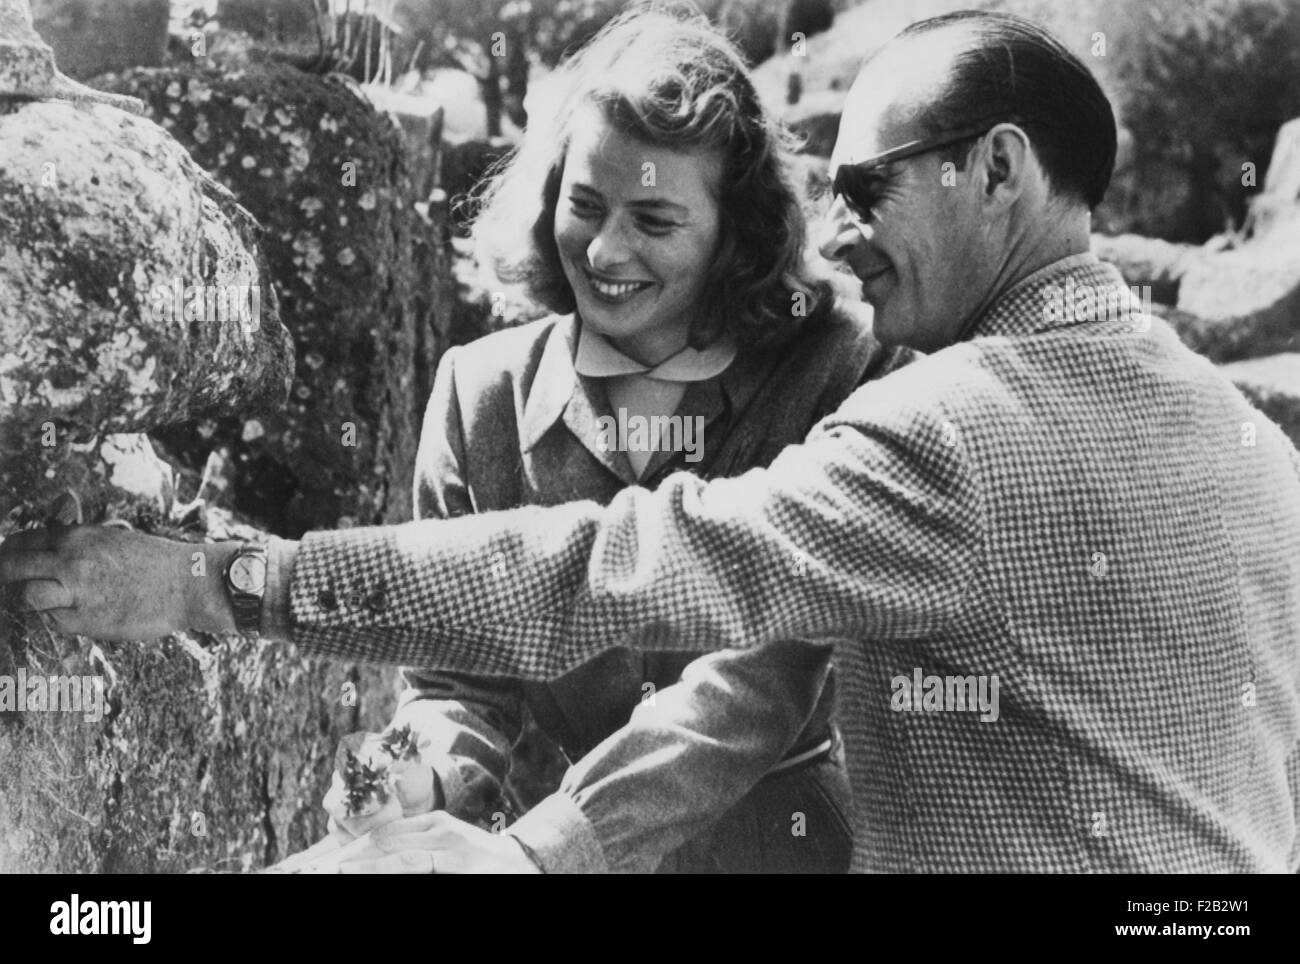 Ingrid Bergman et Roberto Rossellini devenus amants pendant le tournage de Stromboli, avril 1949. Bergman est le holding Flowers Banque D'Images